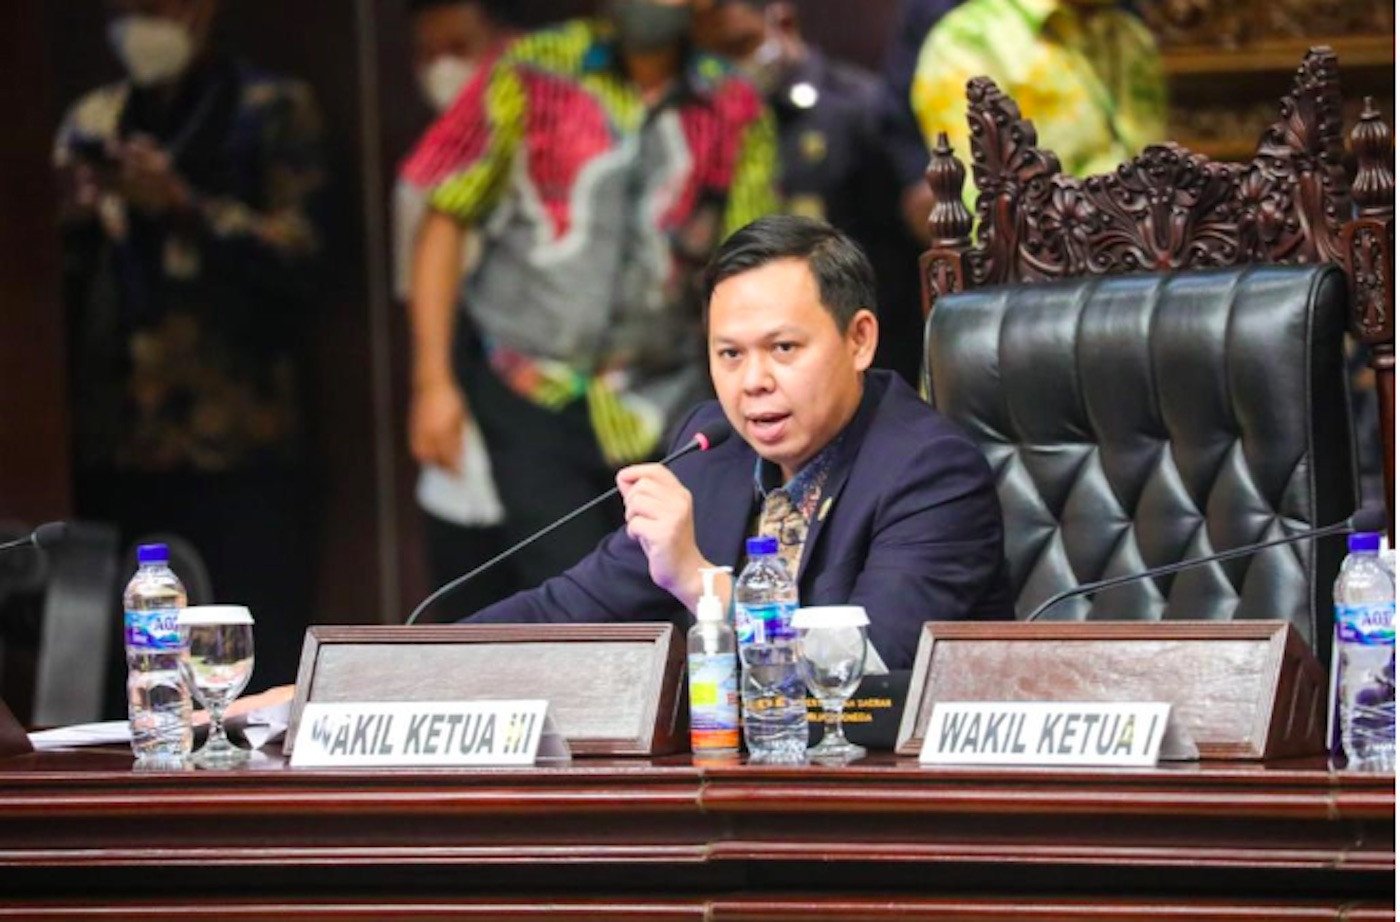 mk menghapus parliamentary threshold, sultan: sistem pilpres langsung juga perlu ditinjau kembali